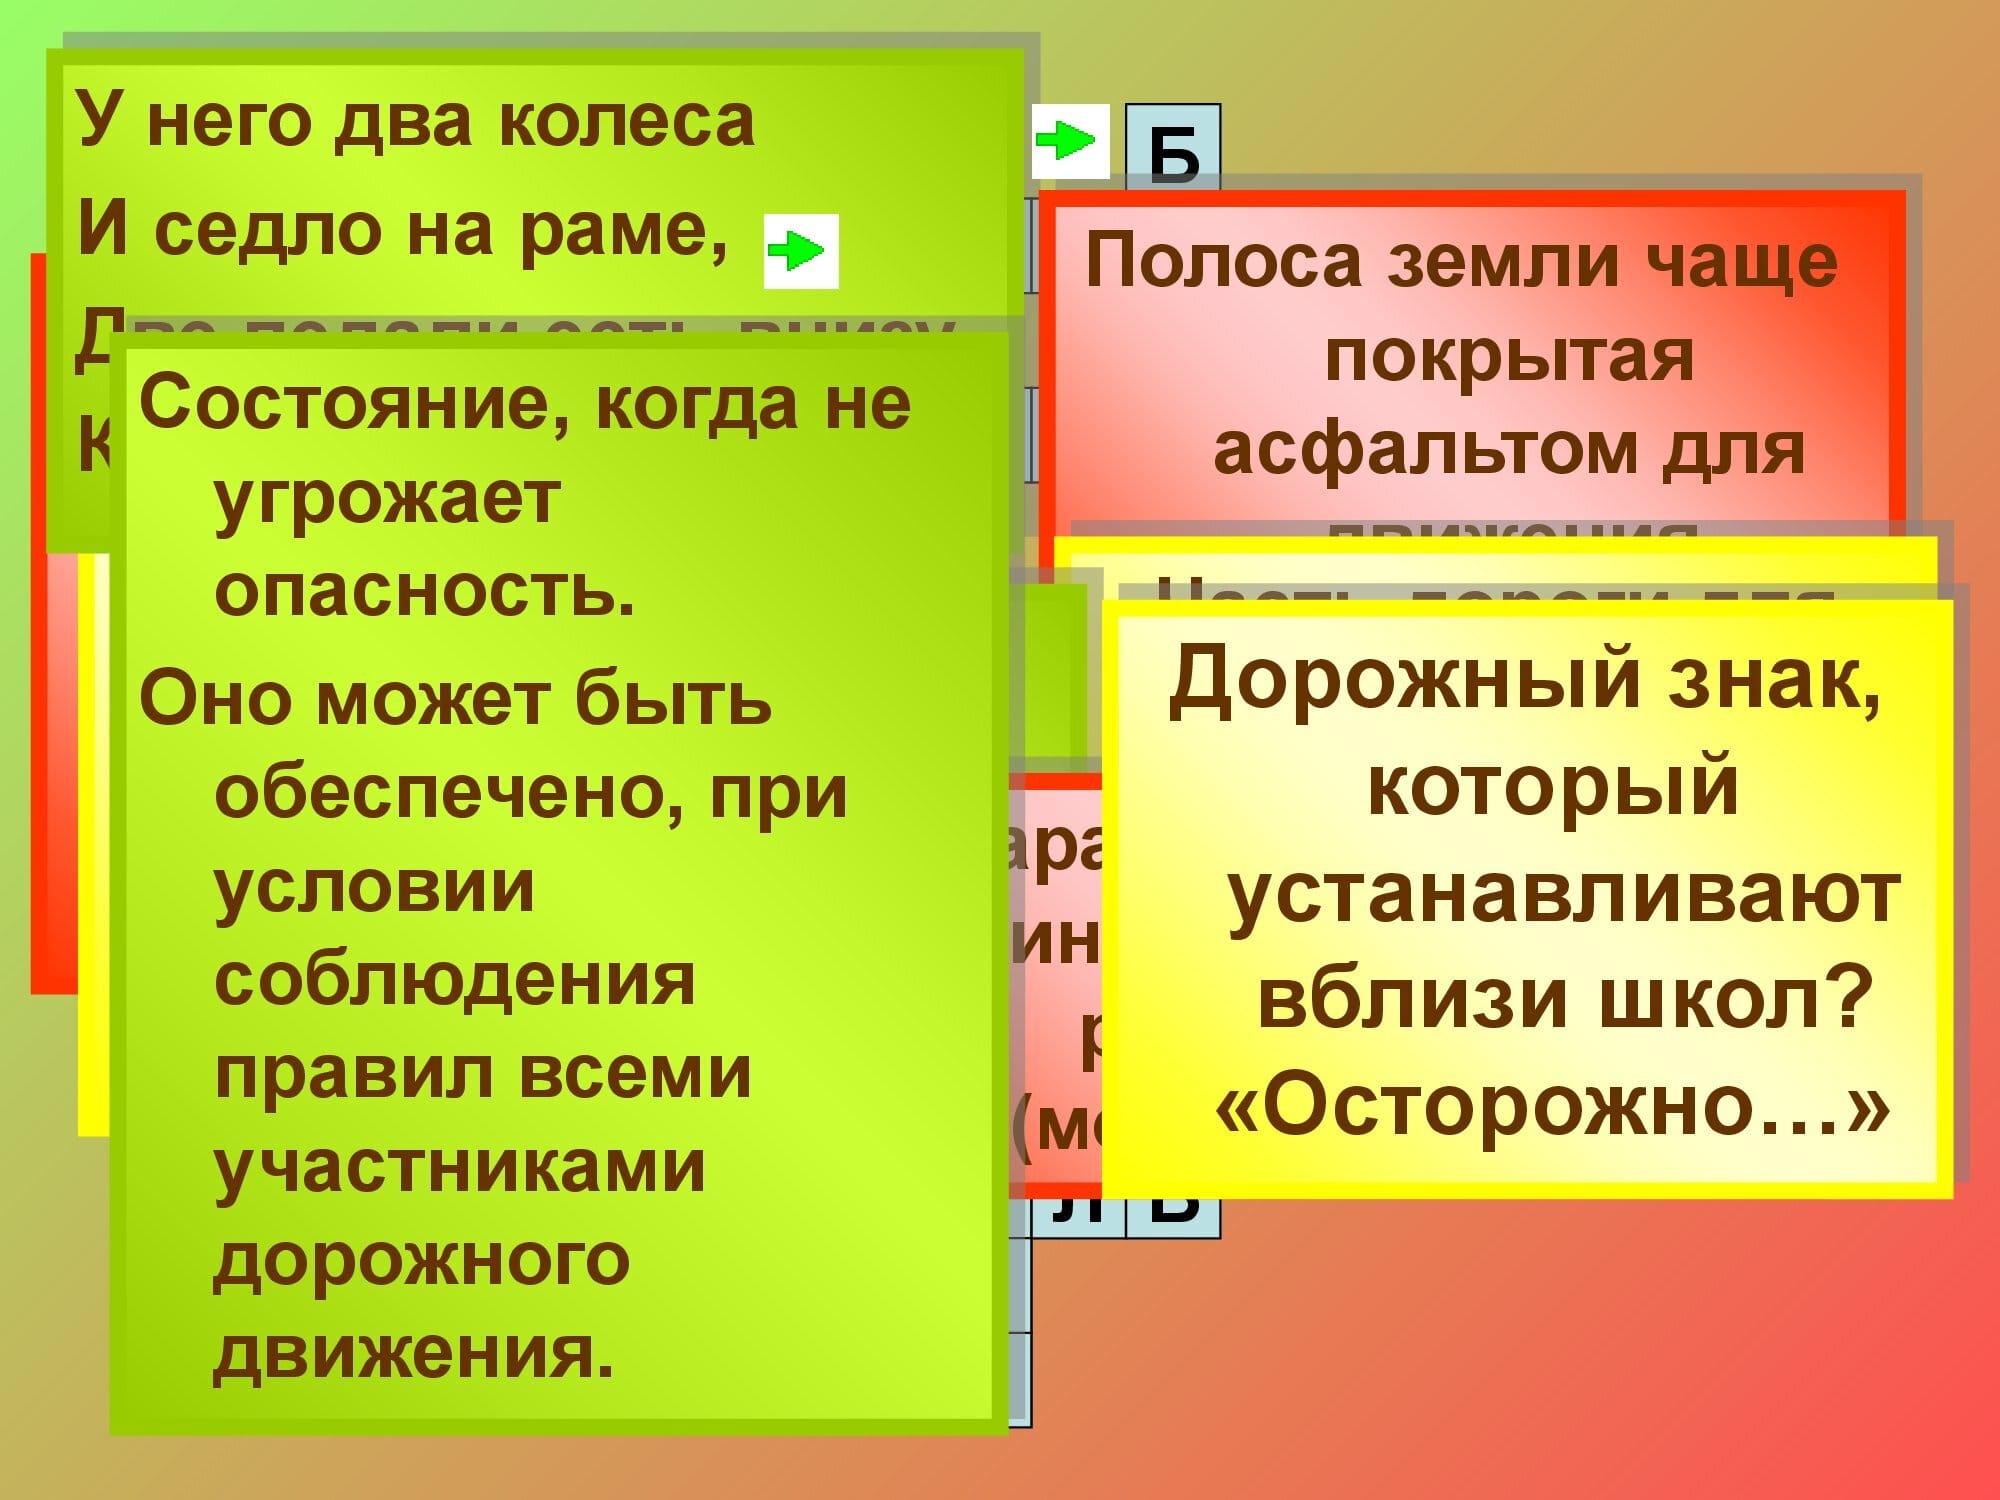 pravila_dorozhnogo_dvizheniya_15-03-2020_0000022